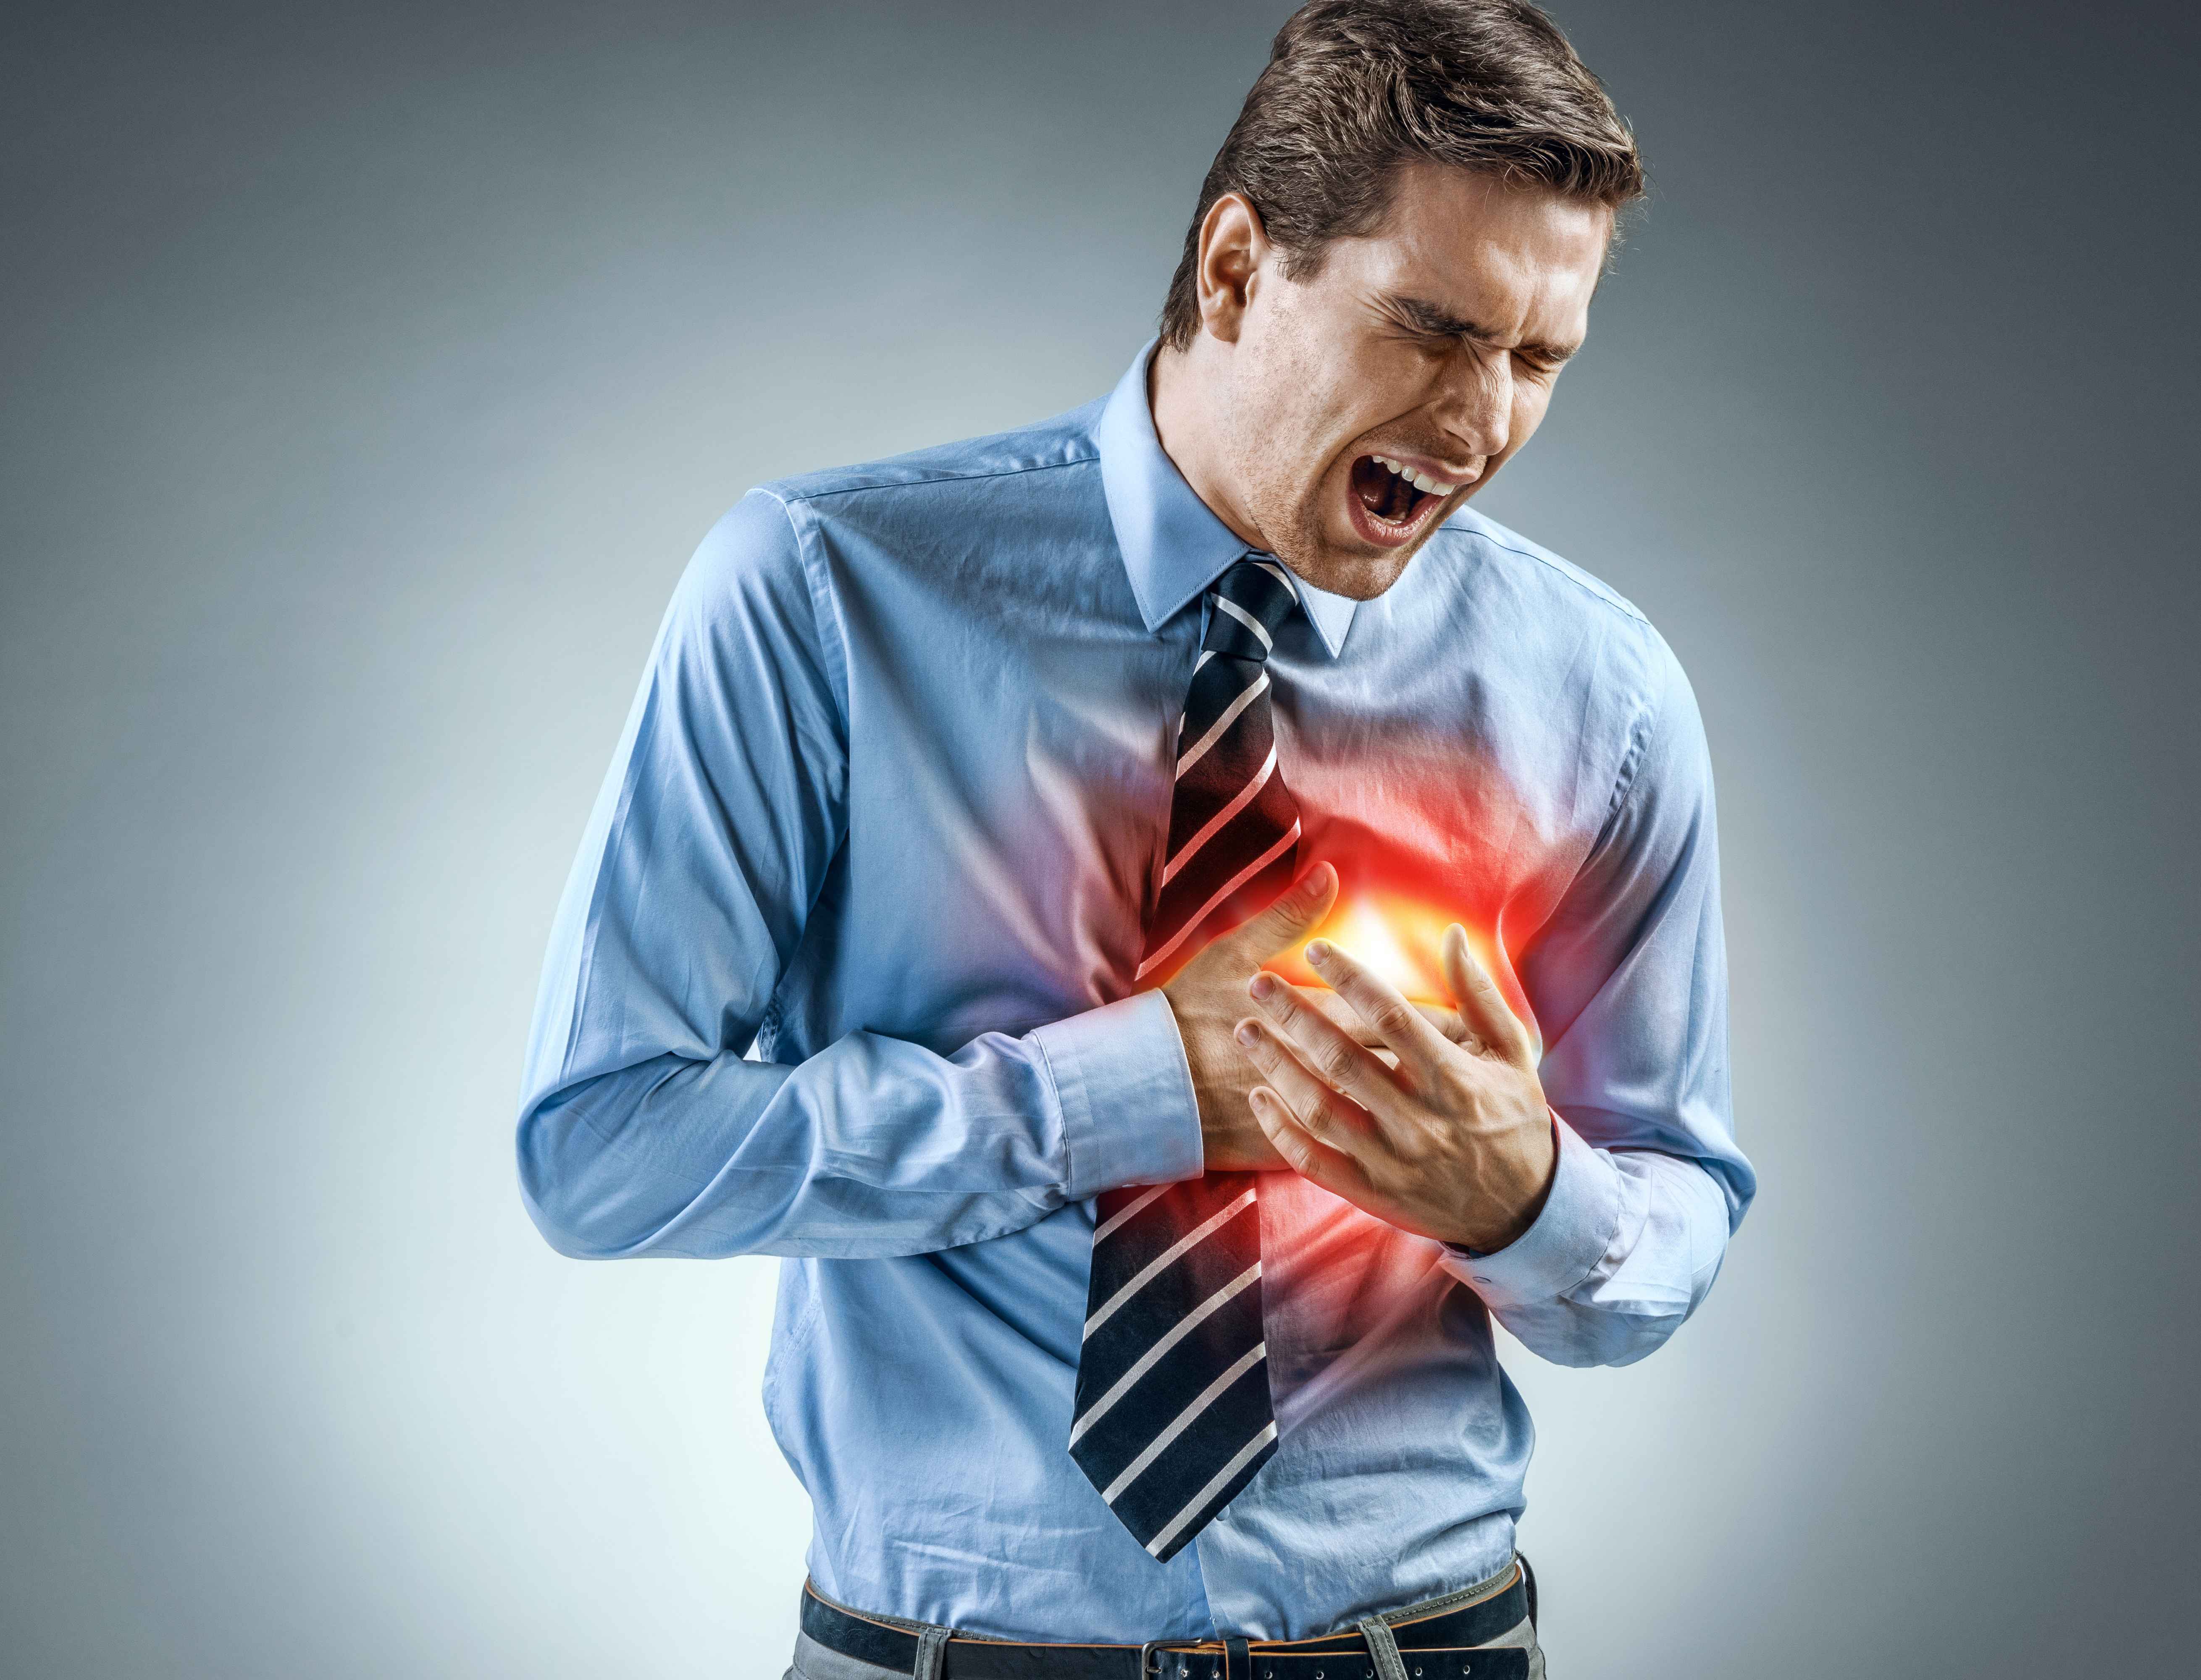 心绞痛属于心脏疾病的一种,患者在发作的时候胸口会有刺痛的感觉,并且